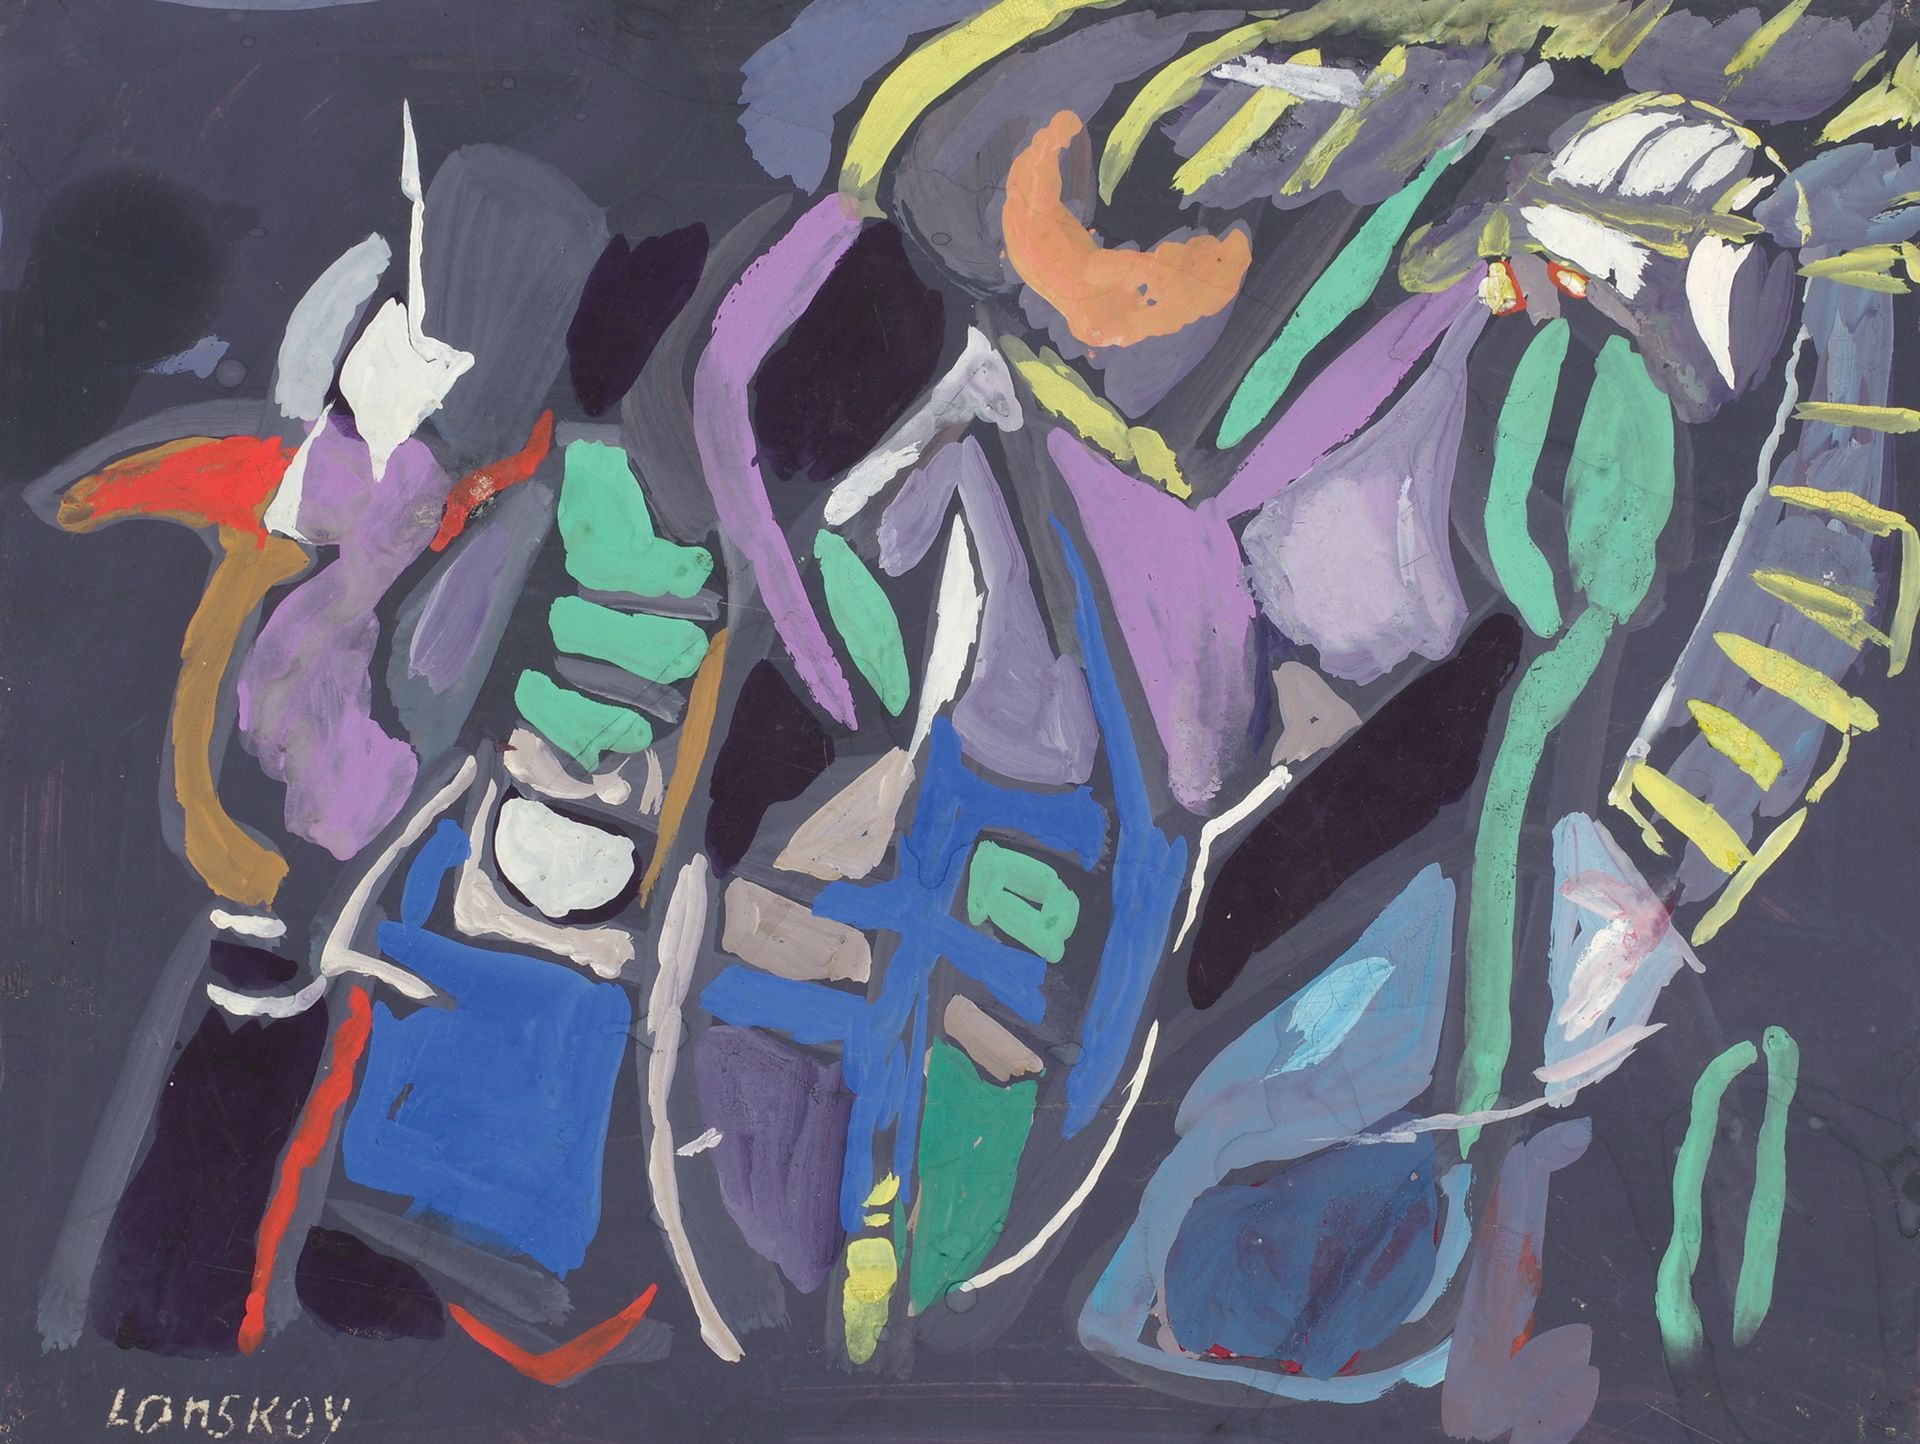 André LANSKOY (1902-1976) 作文
纸上水粉画，左下角有签名，四个角都有画针孔，背面有纸条
25 x 32.5 cm